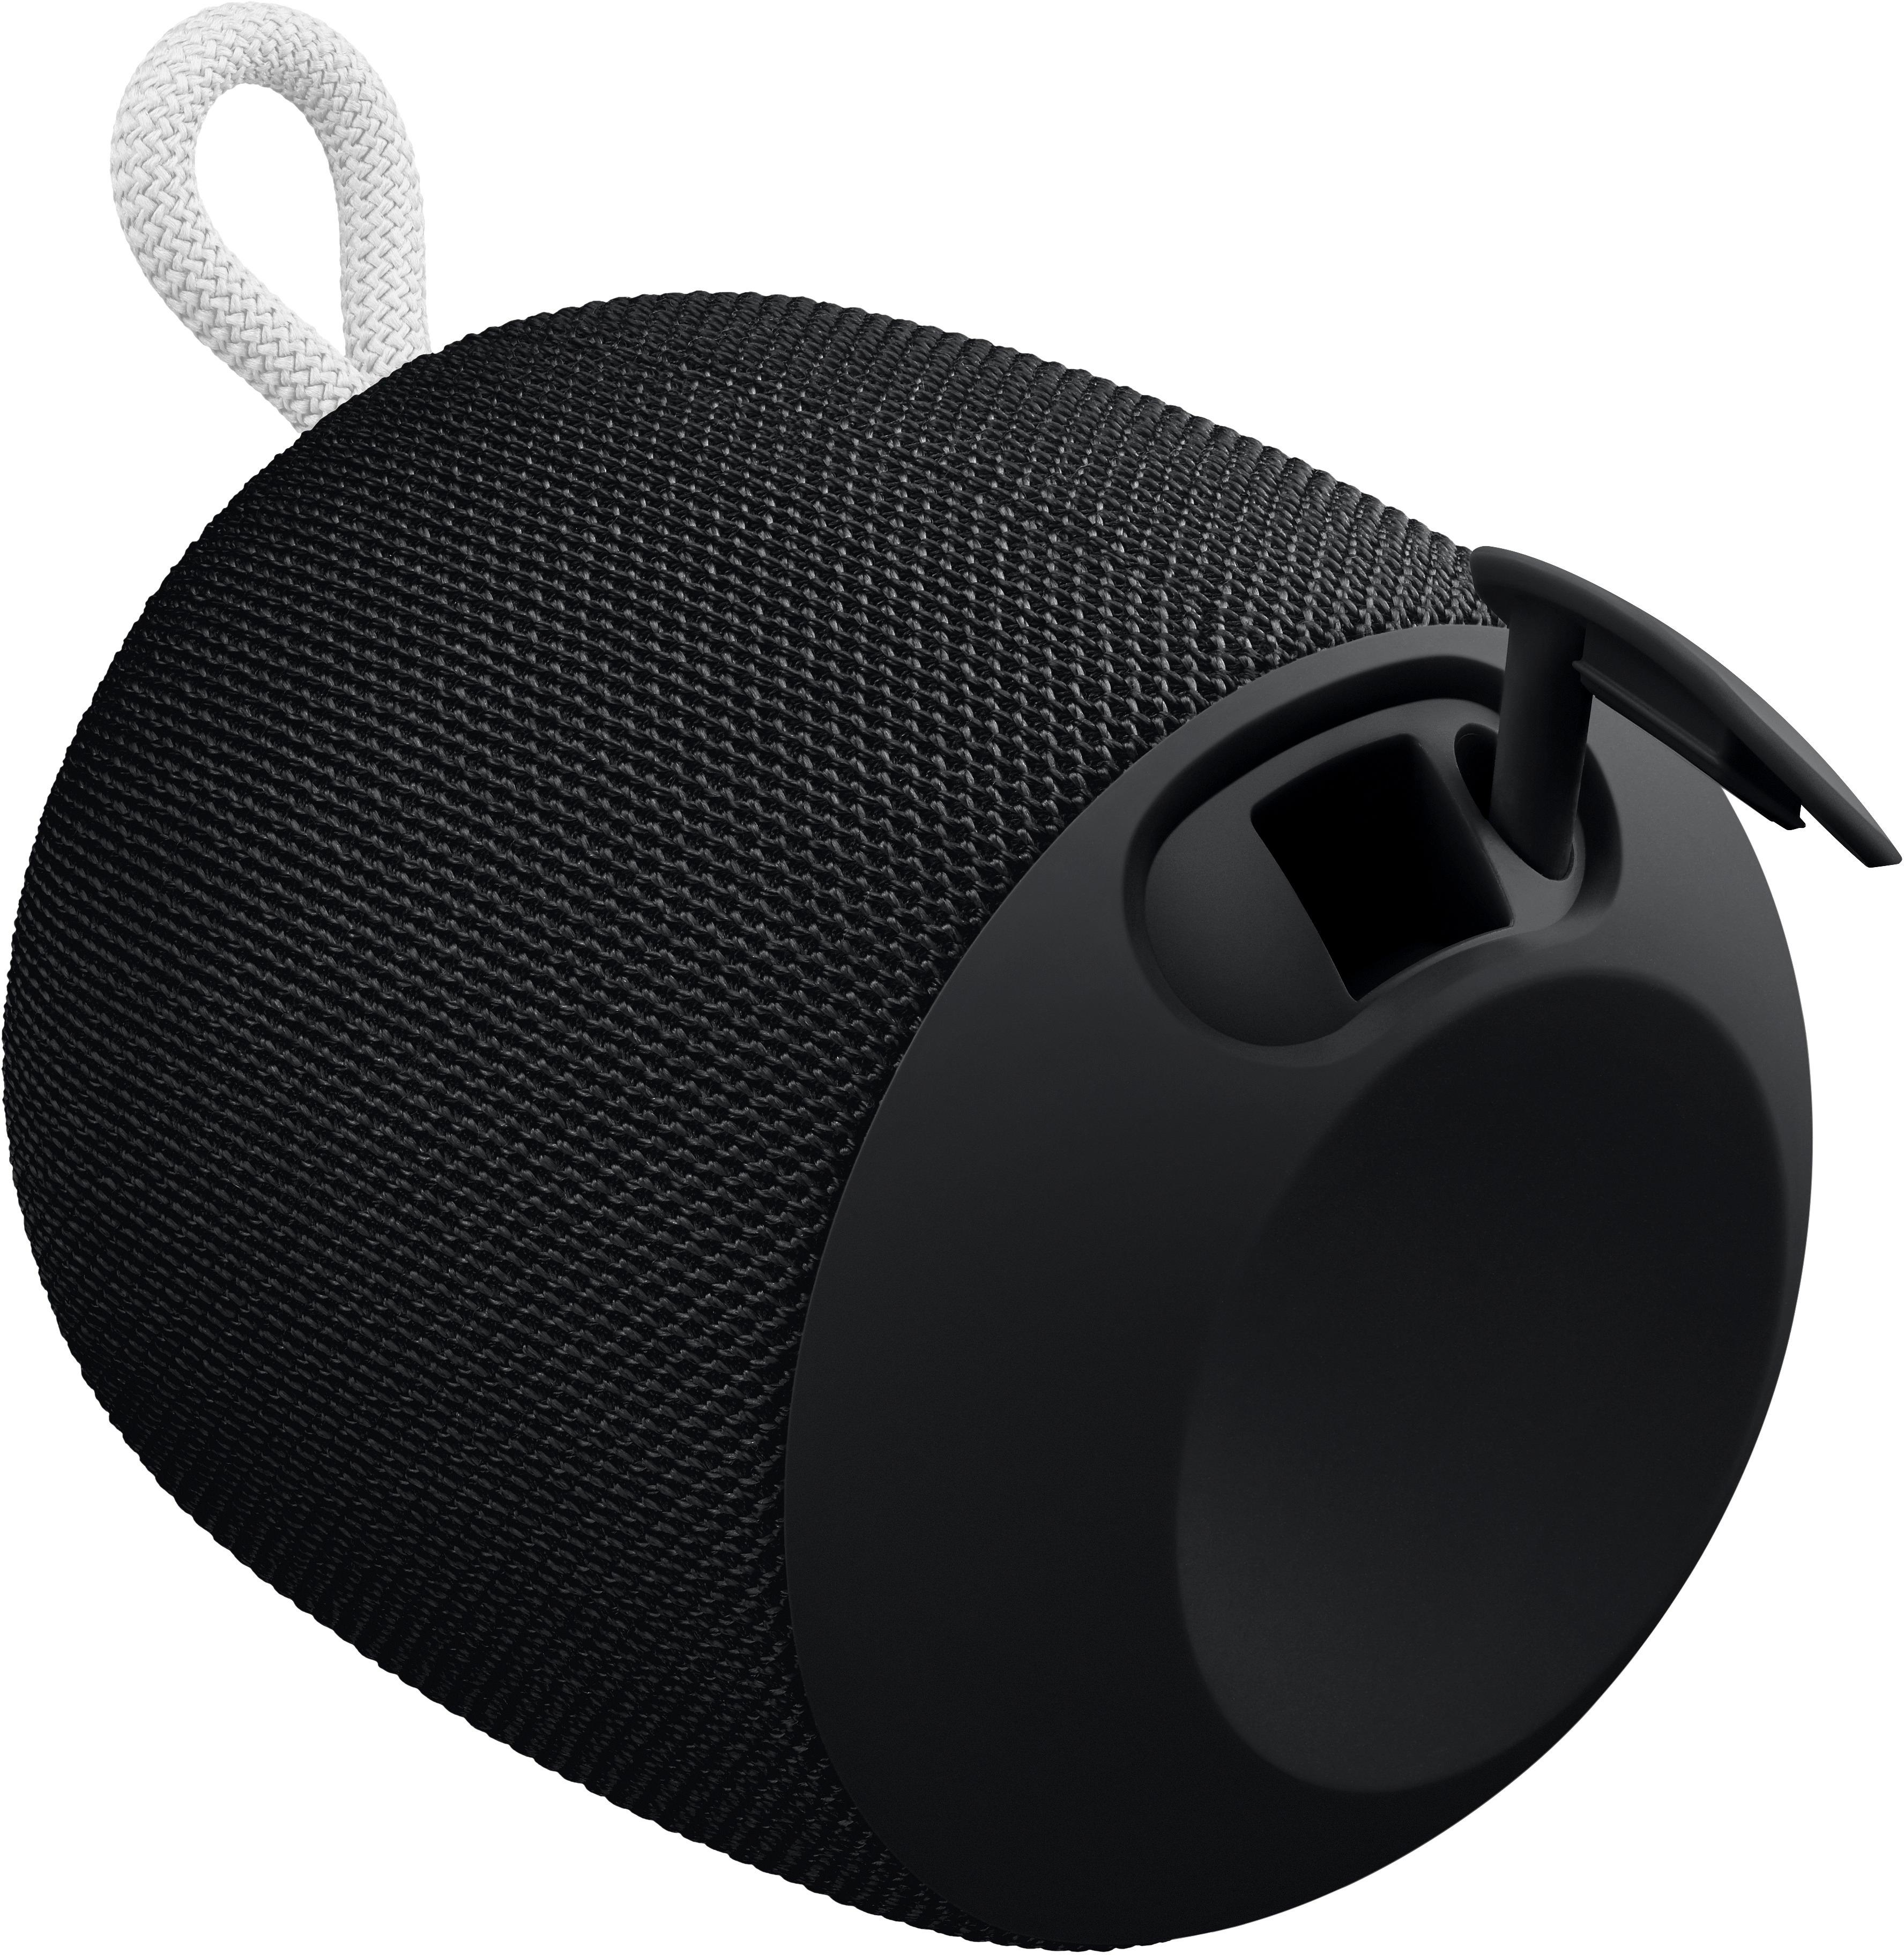 Best Buy: Speaker Ears Ultimate 984-000839 WONDERBOOM Phantom black Bluetooth Portable